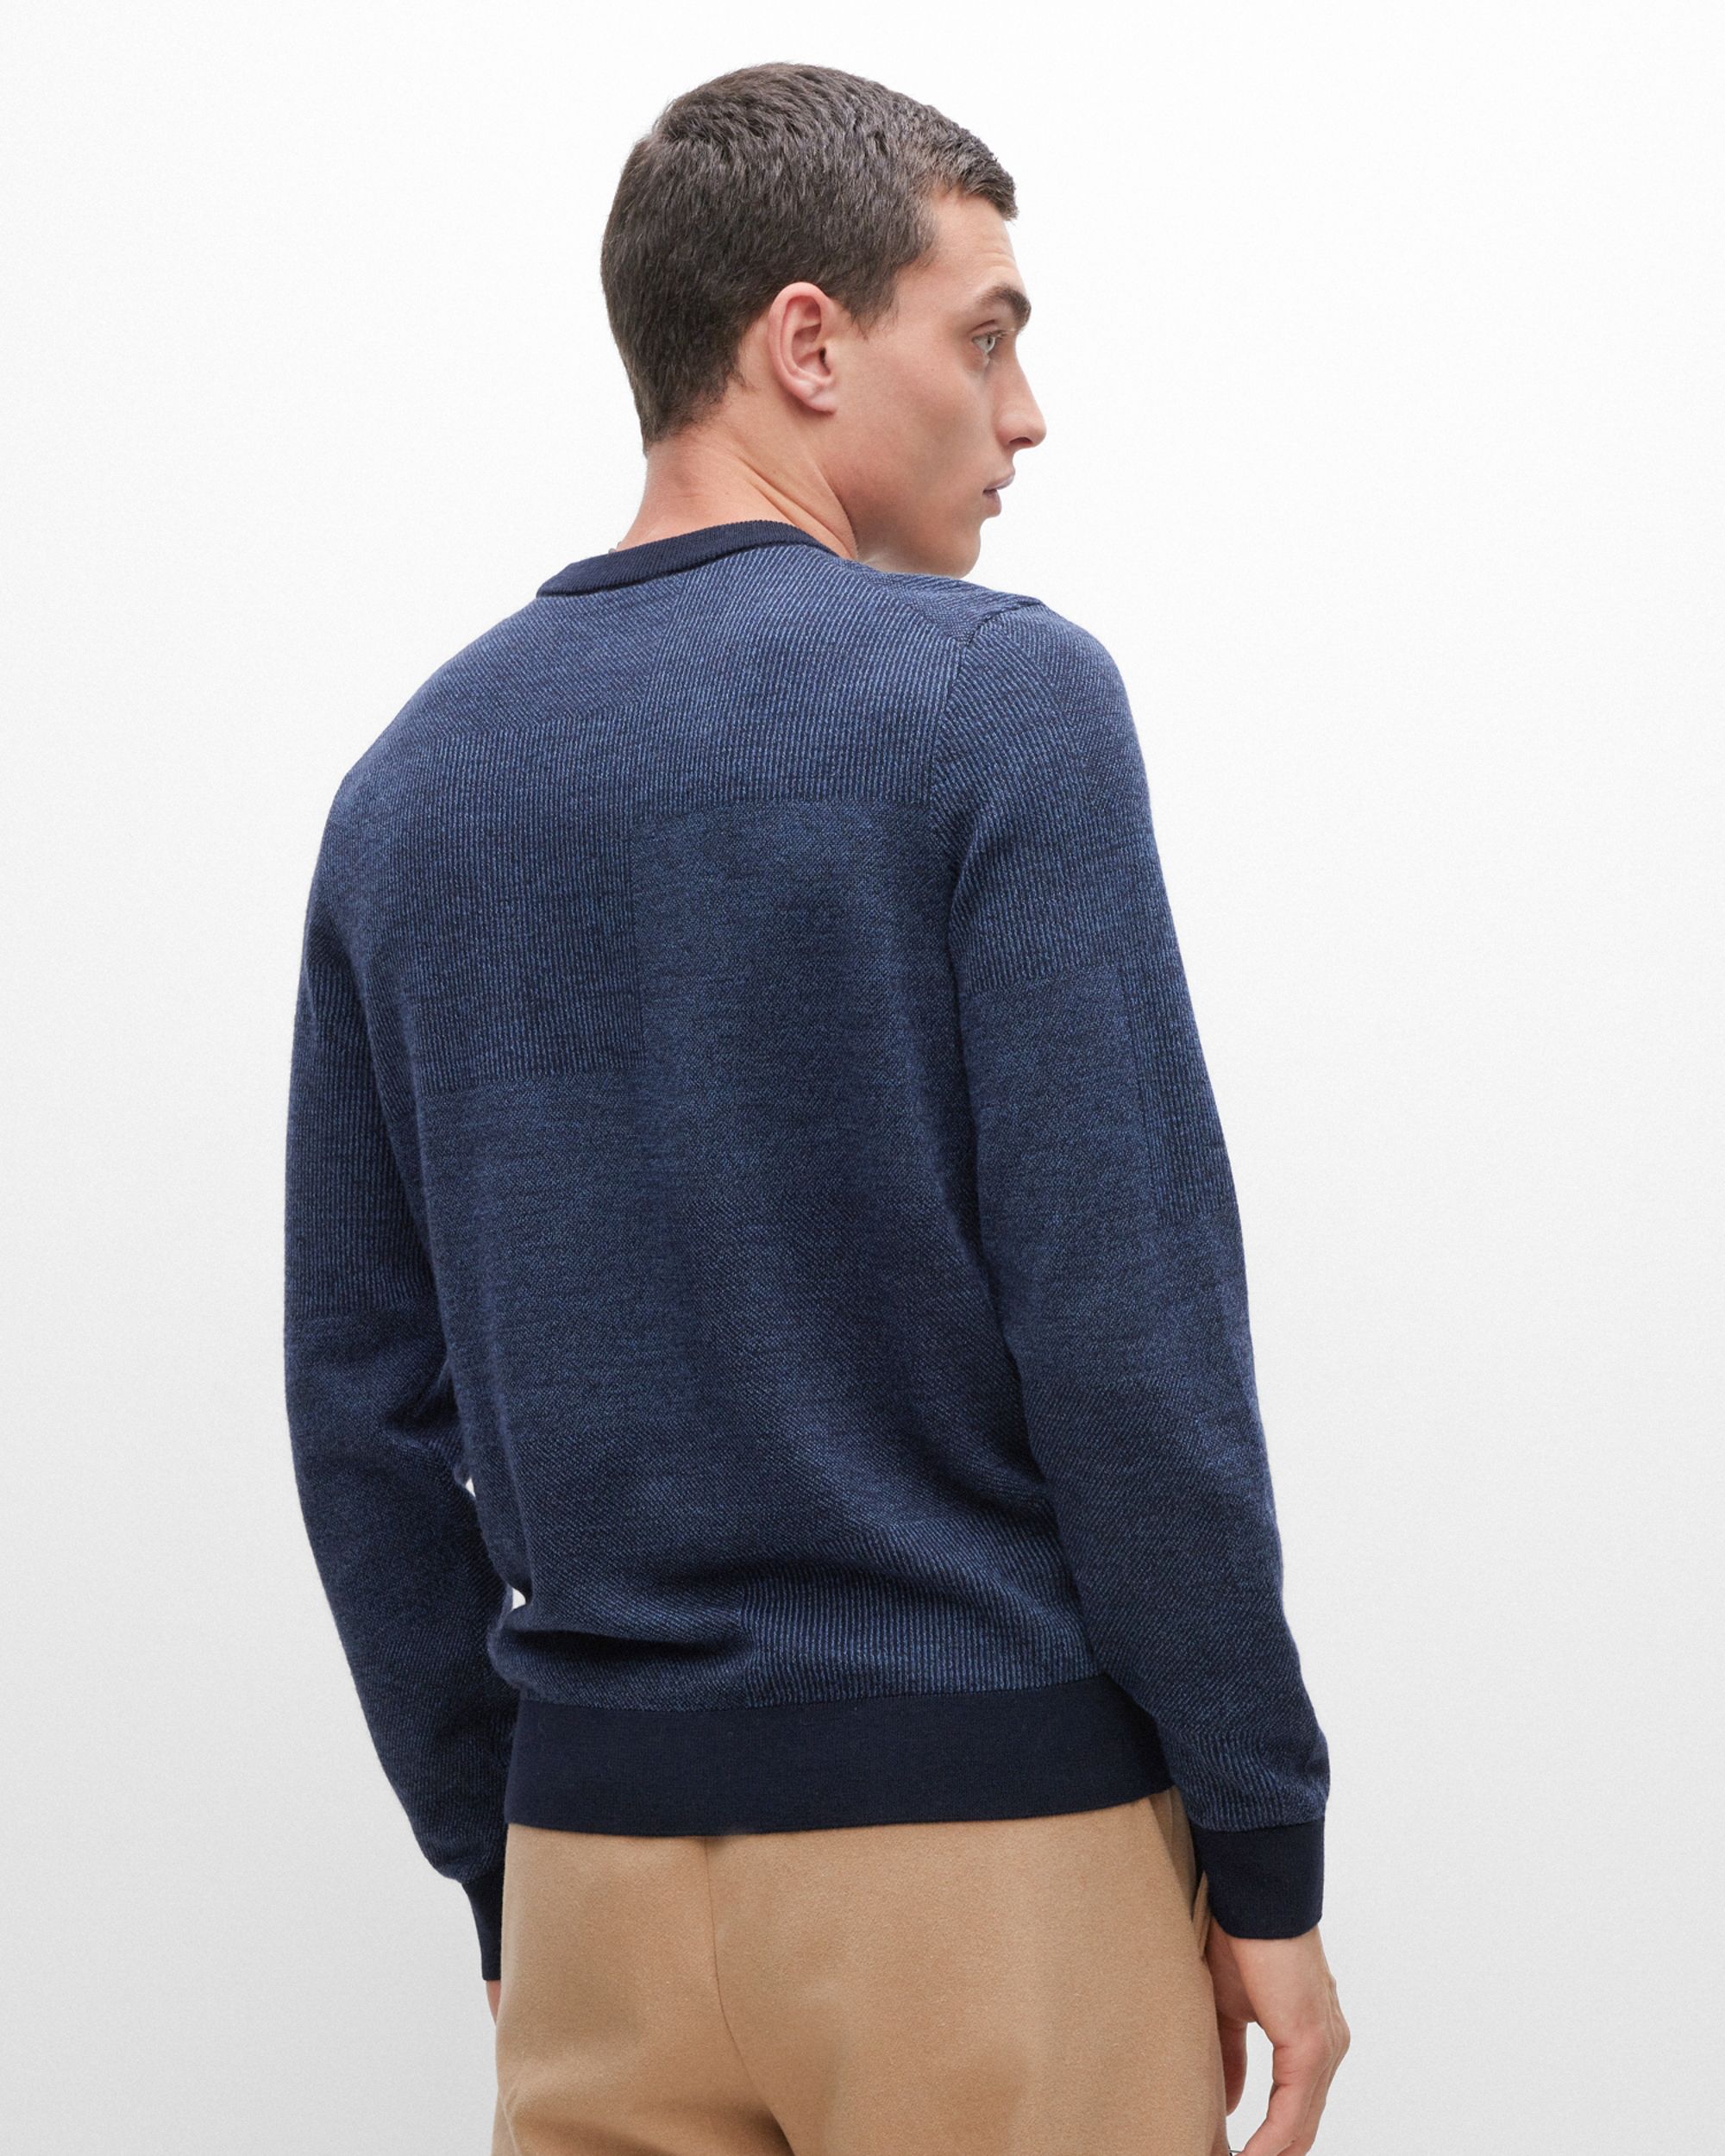 Hugo Boss Menswear Sweater Donker blauw 082427-001-L